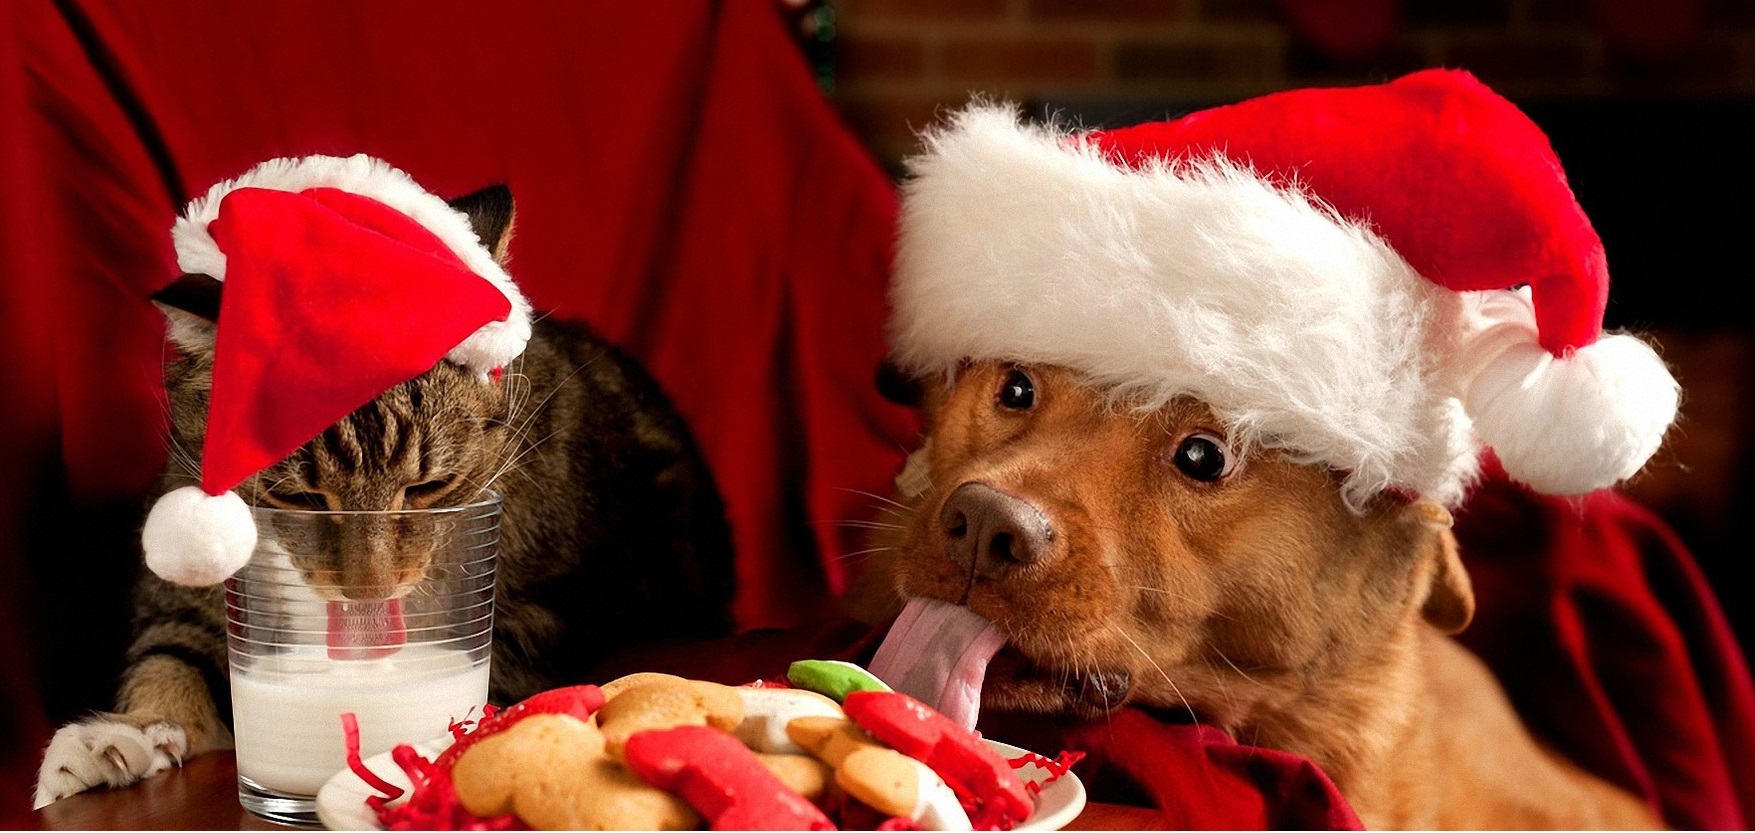 Regali Simpatici Natale.Migliori Regali Animali Cani E Gatti Natale 2016 A Prezzi Scontati Amazon